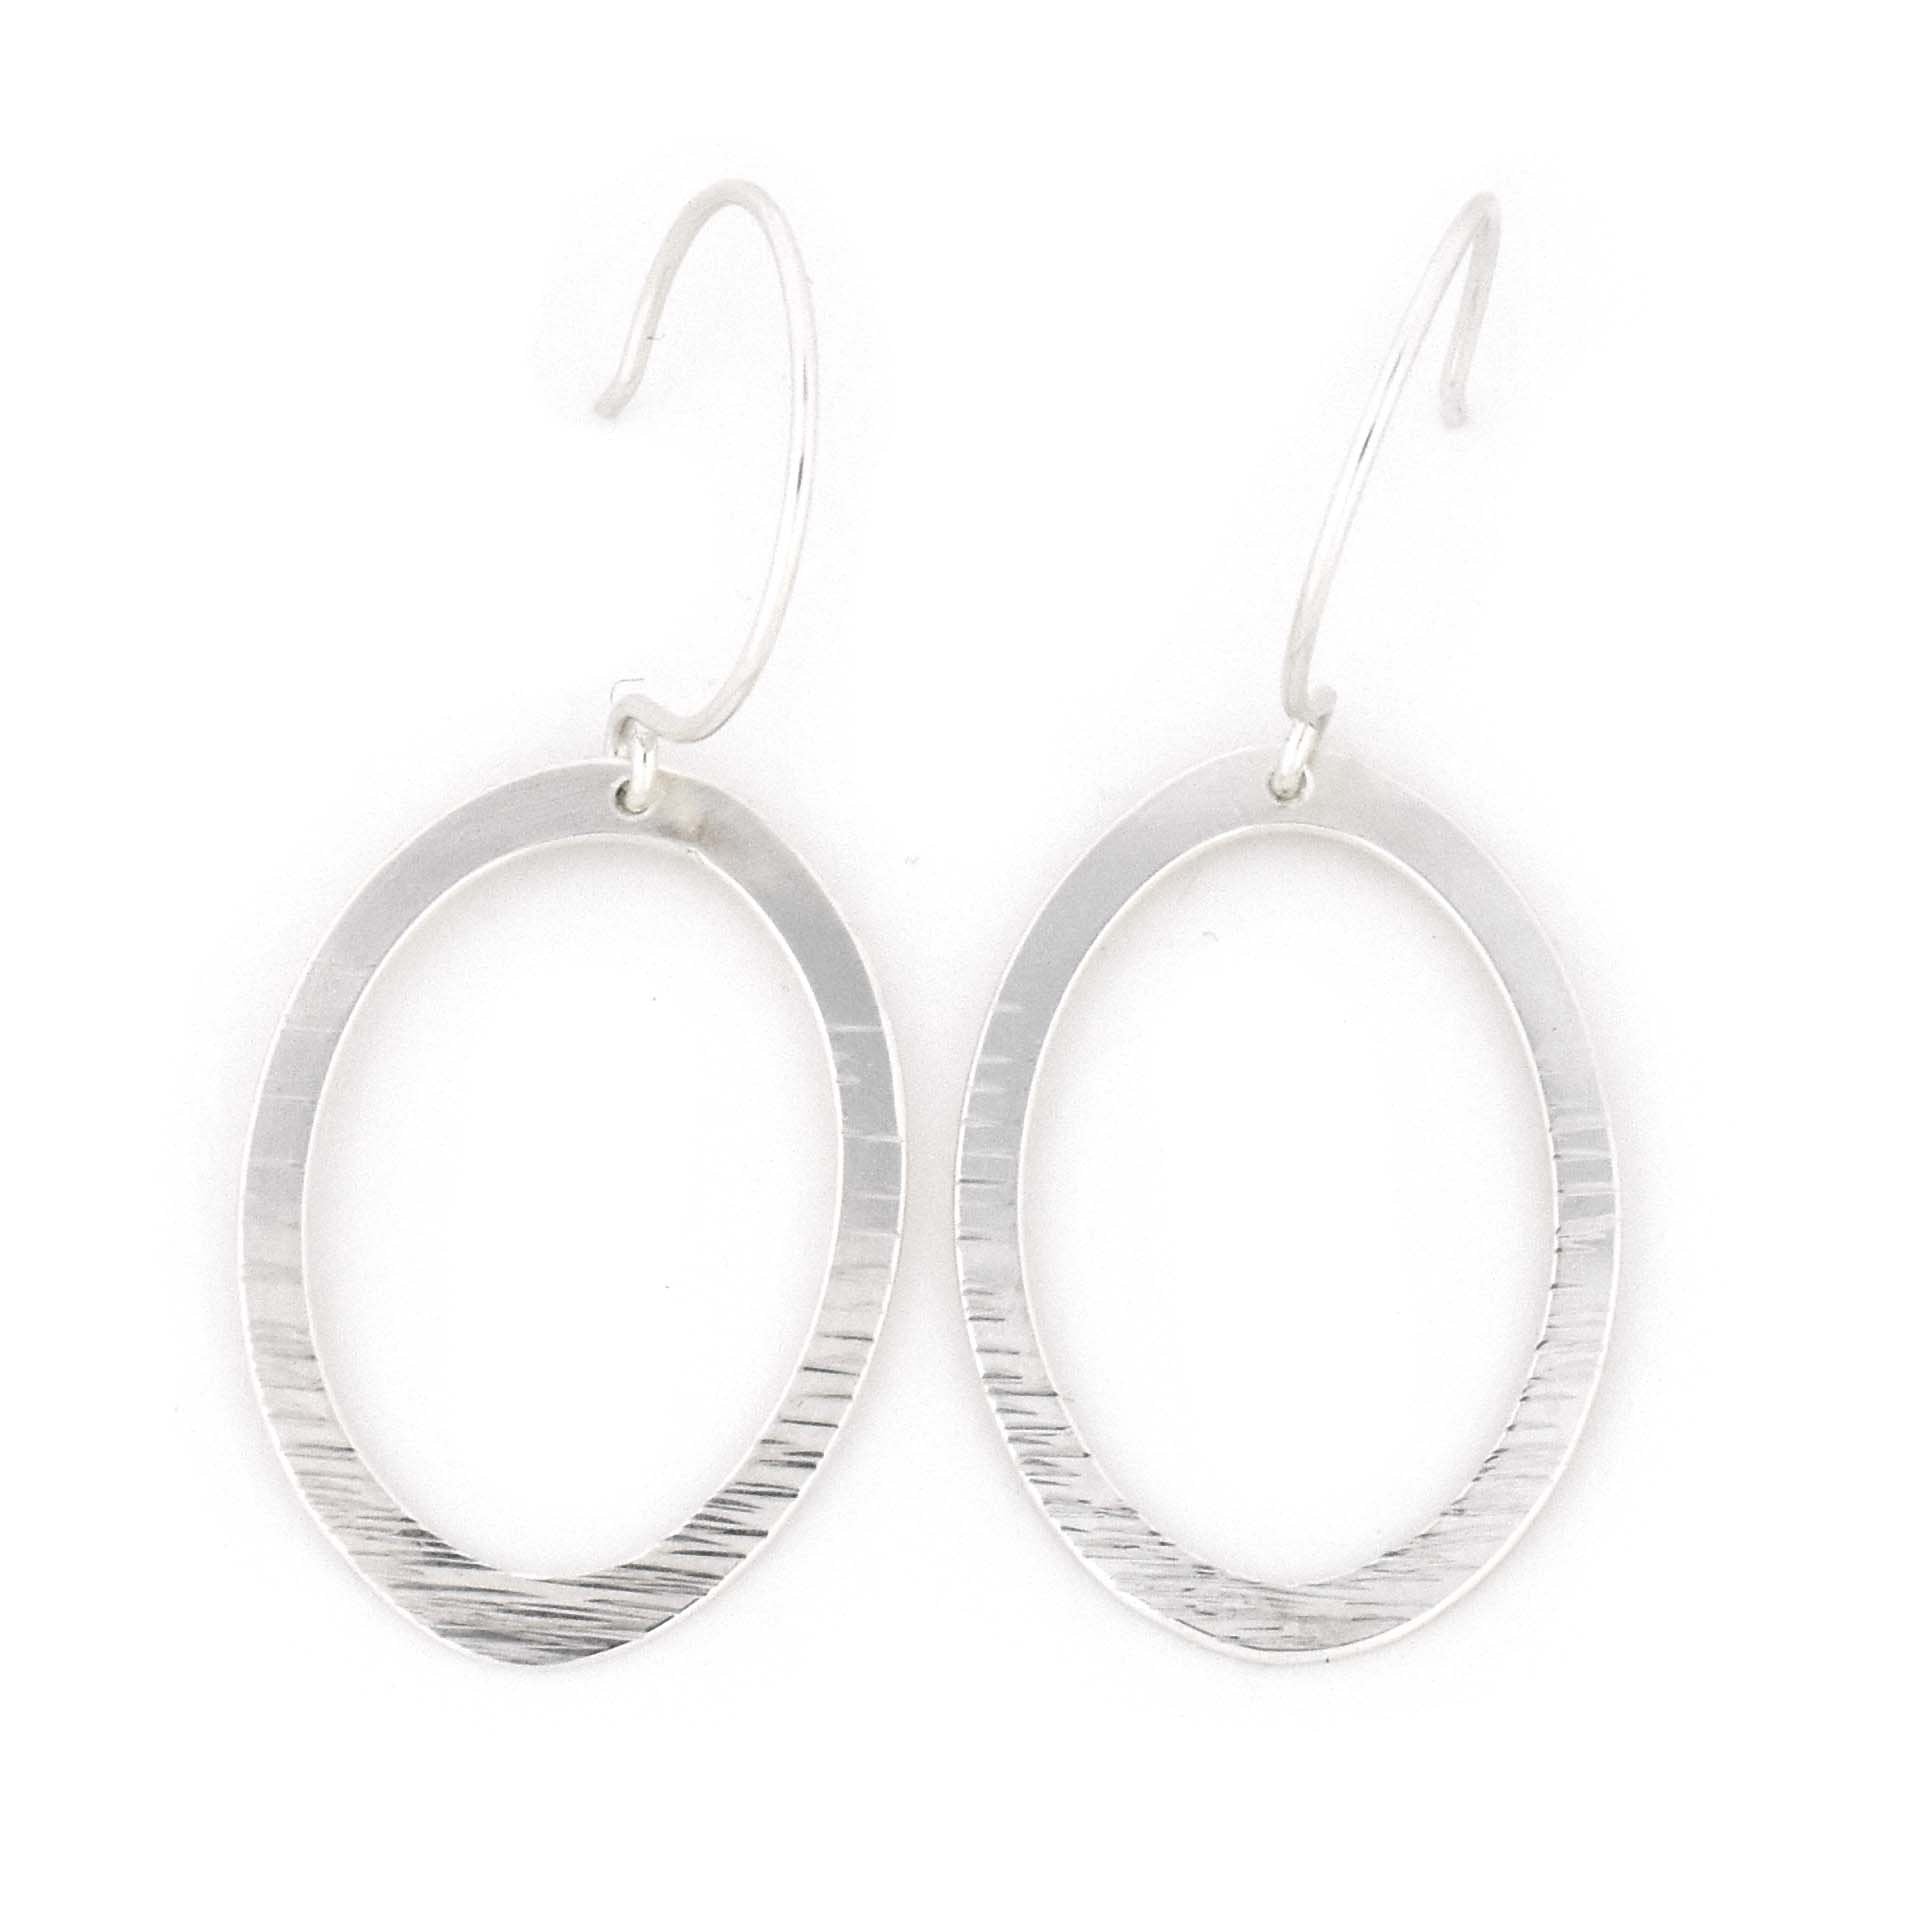 Assorted Textured Sterling Silver Hoop Earrings - Silver Earrings  Radial  Hammered 2742 - handmade by Beth Millner Jewelry